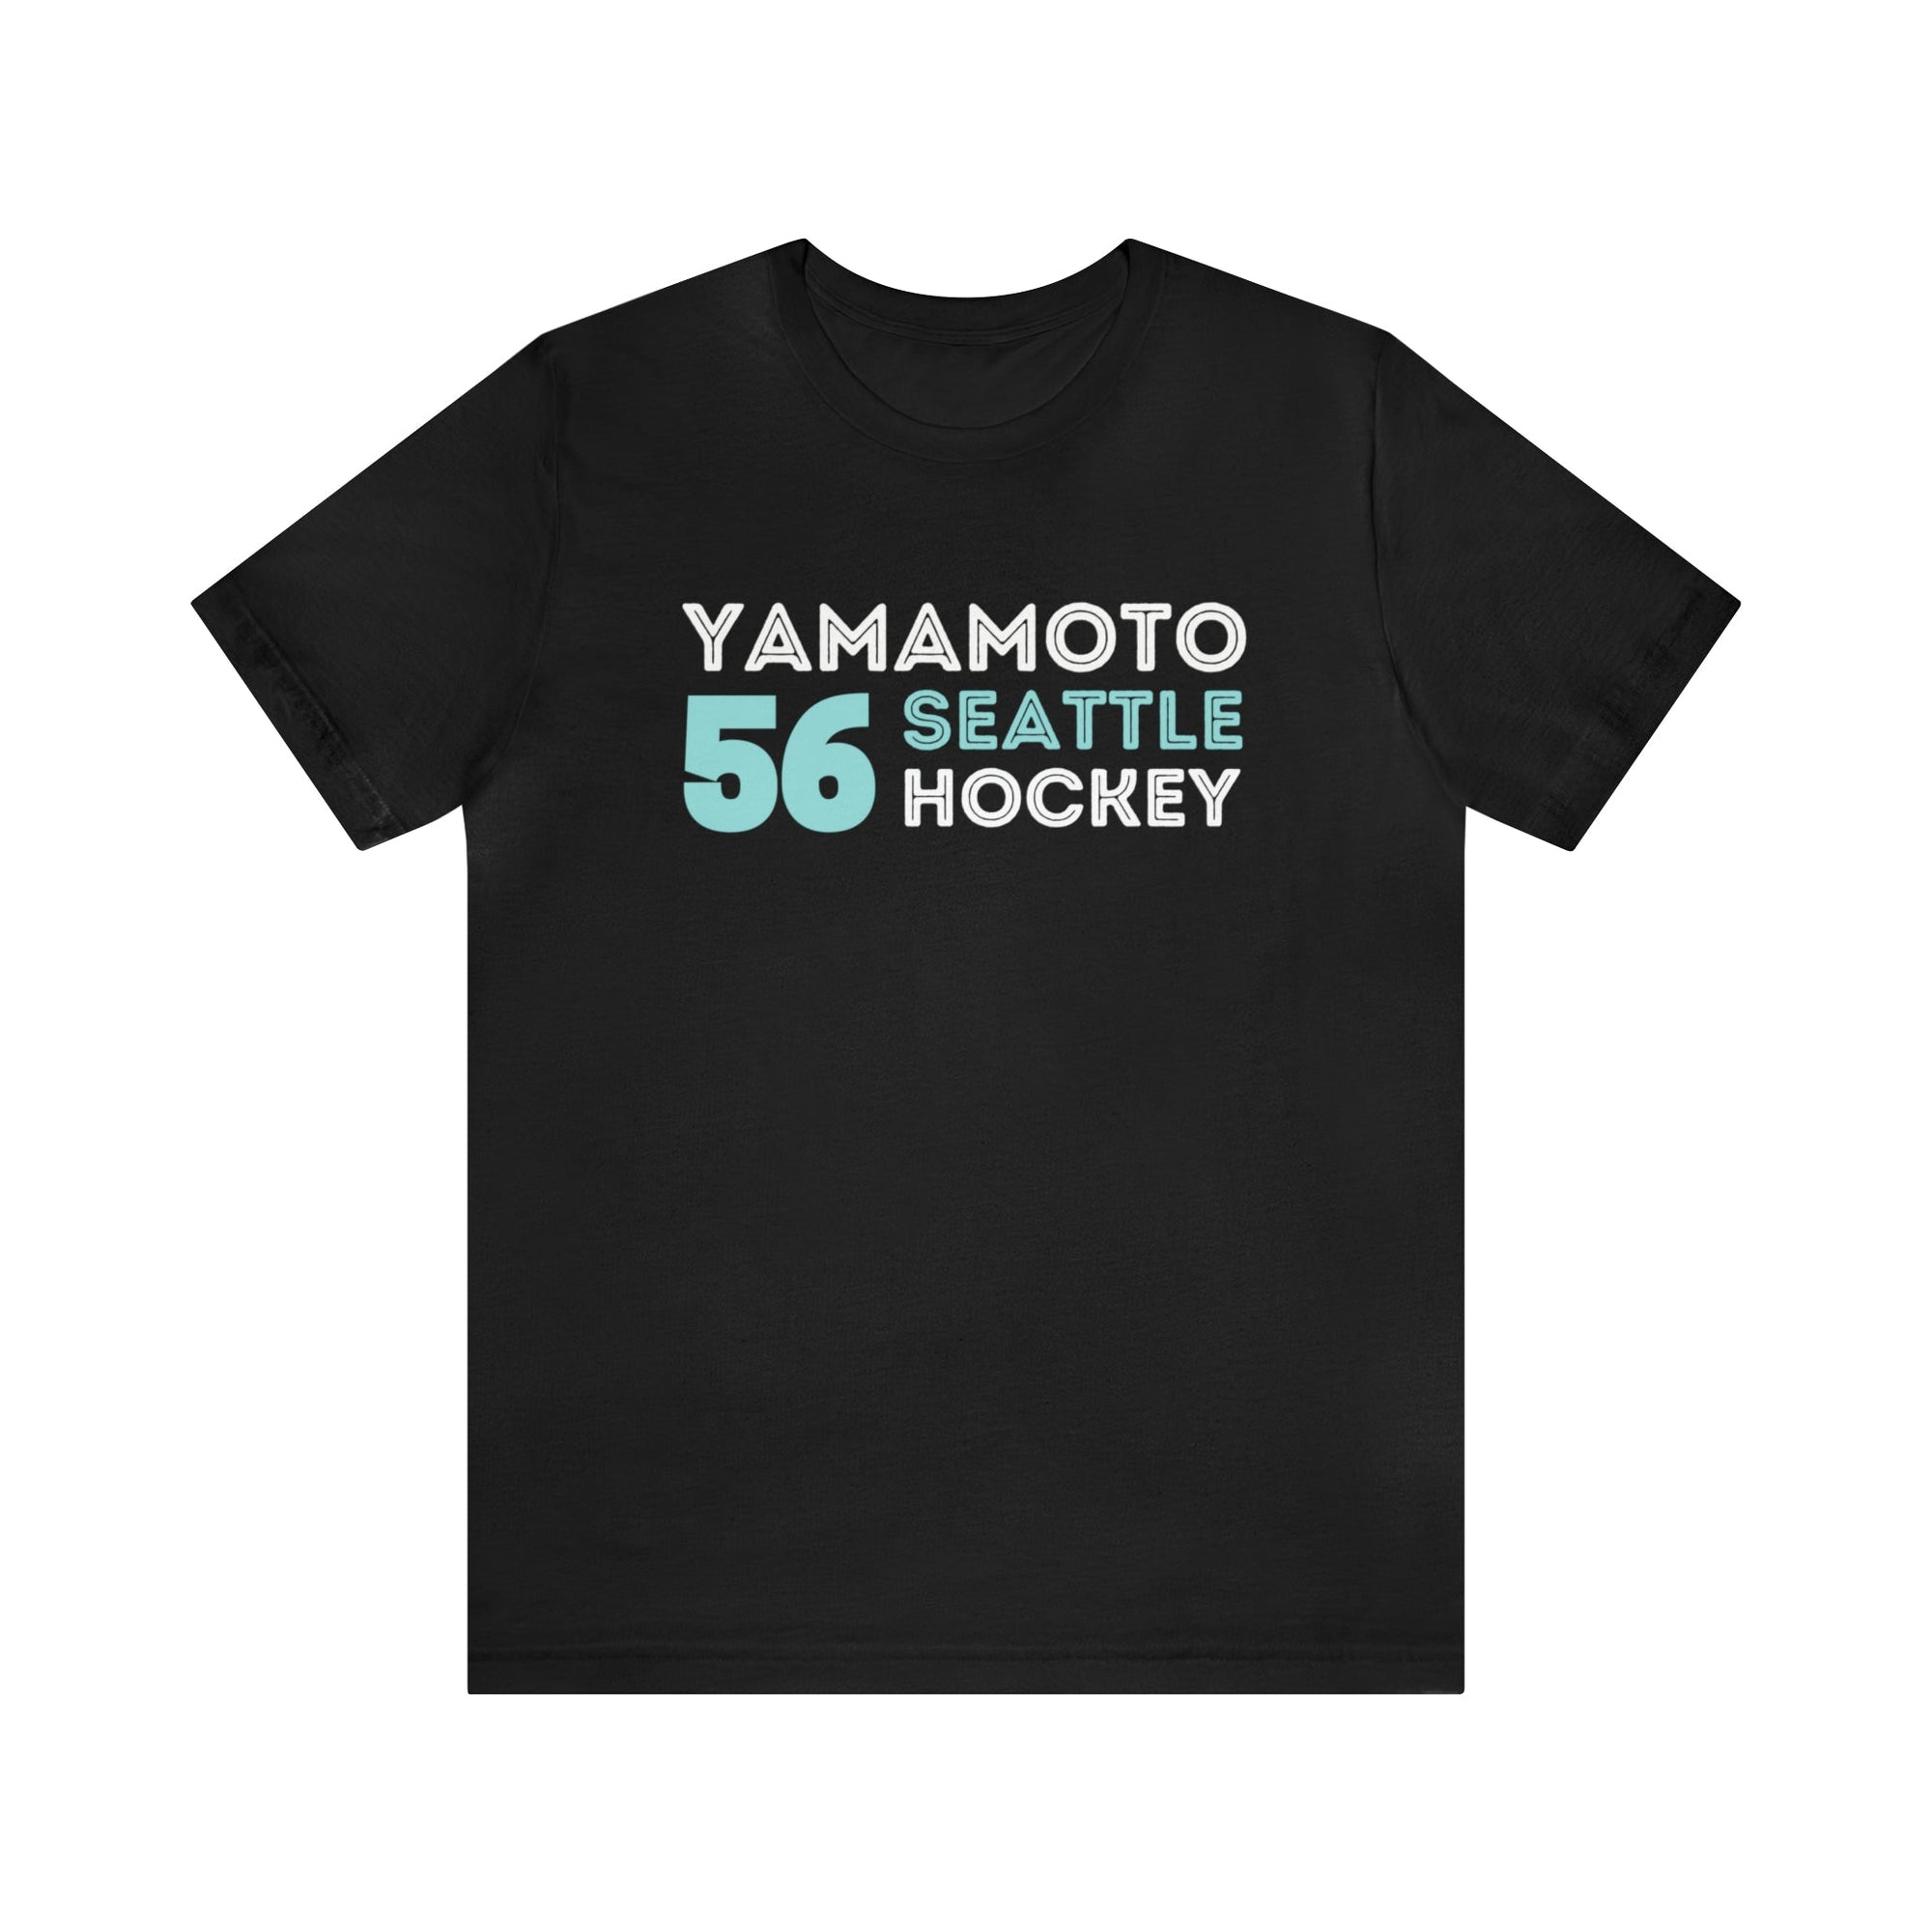 T-Shirt Yamamoto 56 Seattle Hockey Grafitti Wall Design Unisex T-Shirt